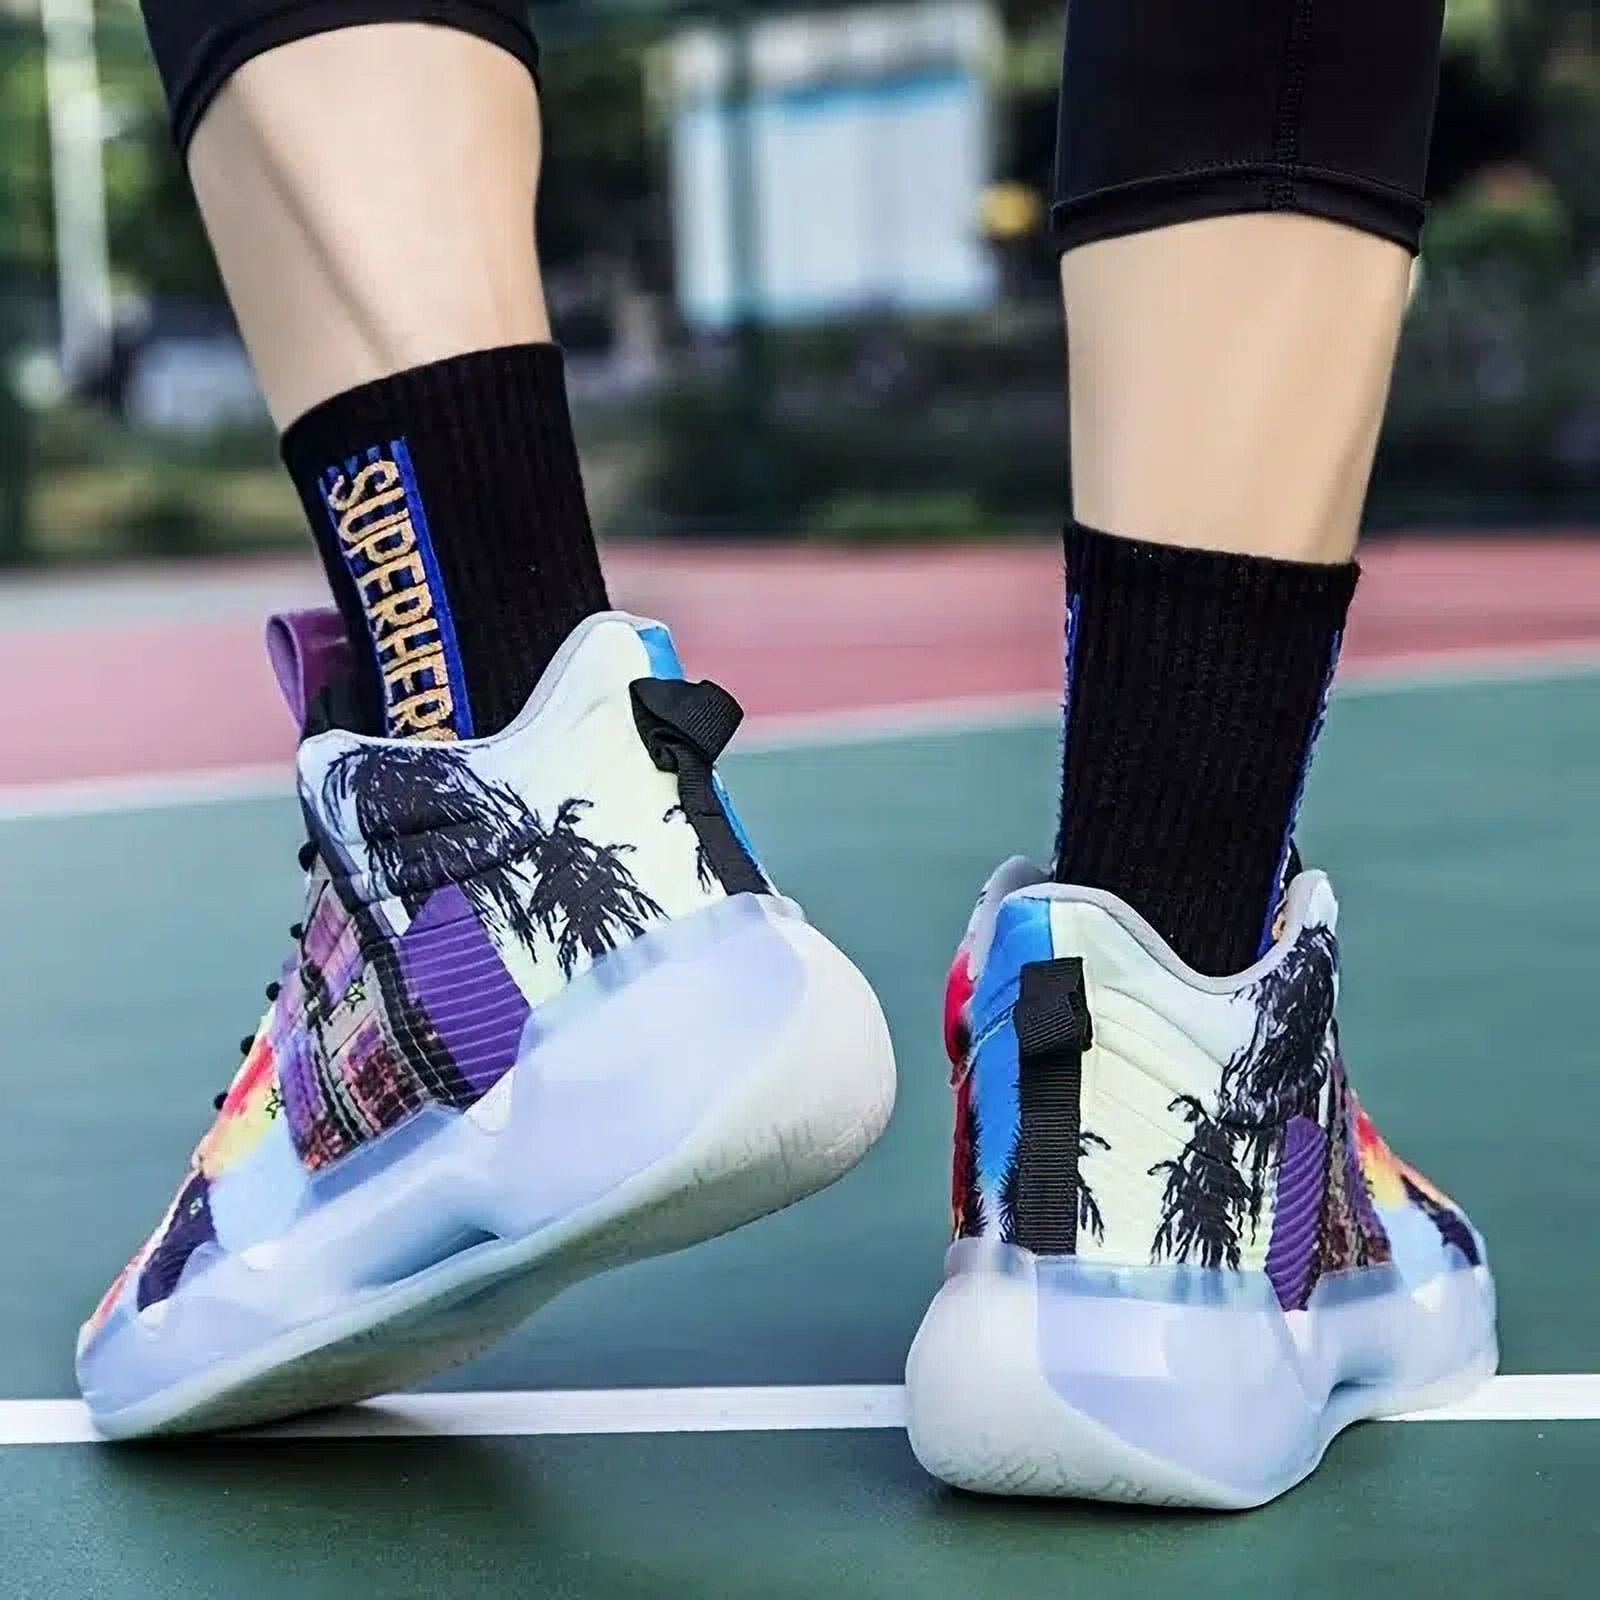 Skechers Makes Its Basketball Footwear Debut | Hypebeast